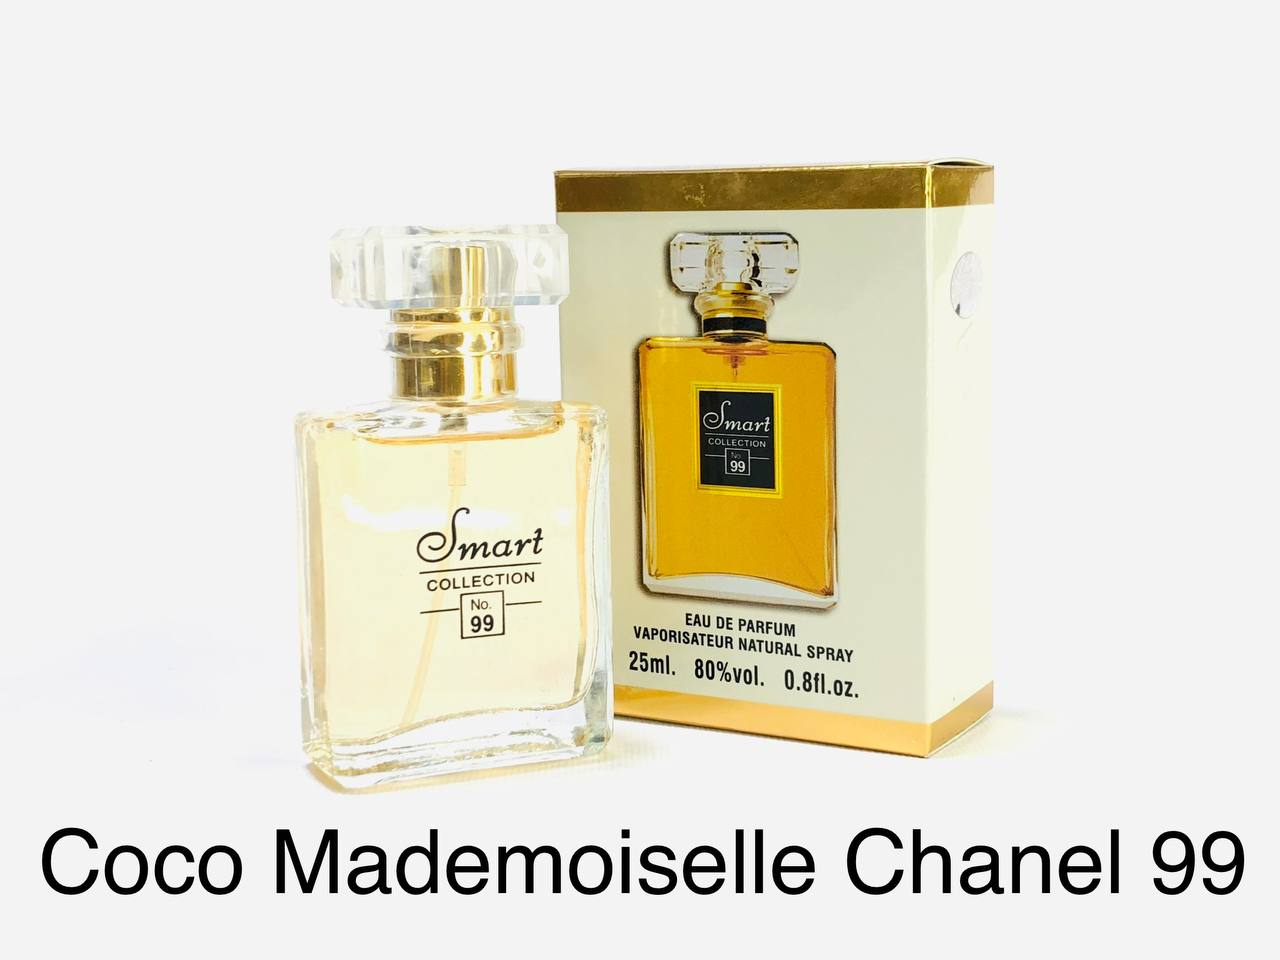  شانل کوکو مادمازل اسمارت کالکشن کد 99 (Coco Mademoiselle)، عطر زنانه خنک، کوکوشنل مادمازل